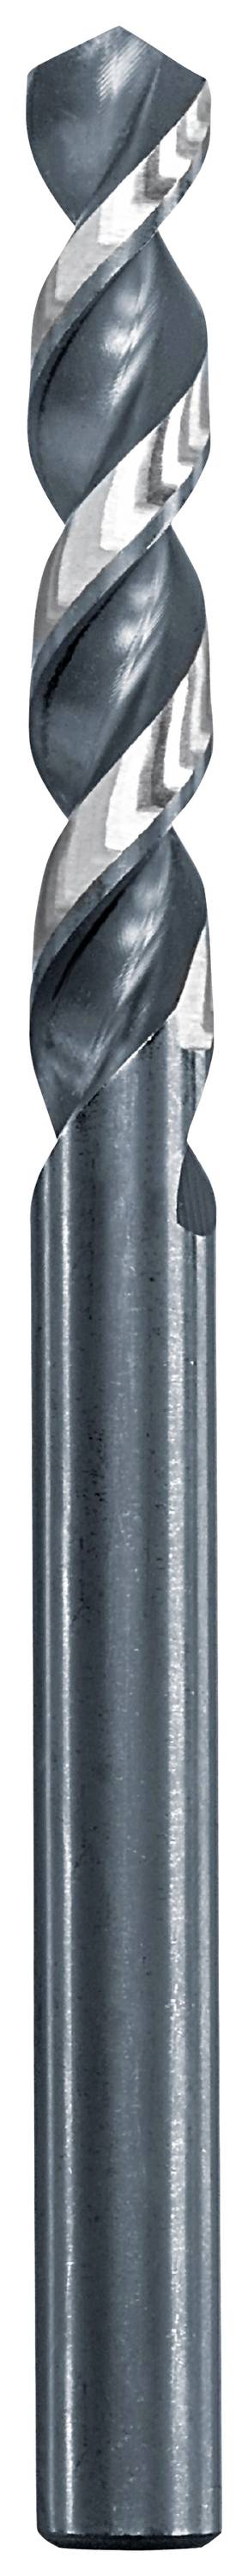 KWB 258685 Metall-Spiralbohrer 8.5 mm Gesamtlänge 117 mm 1 St.